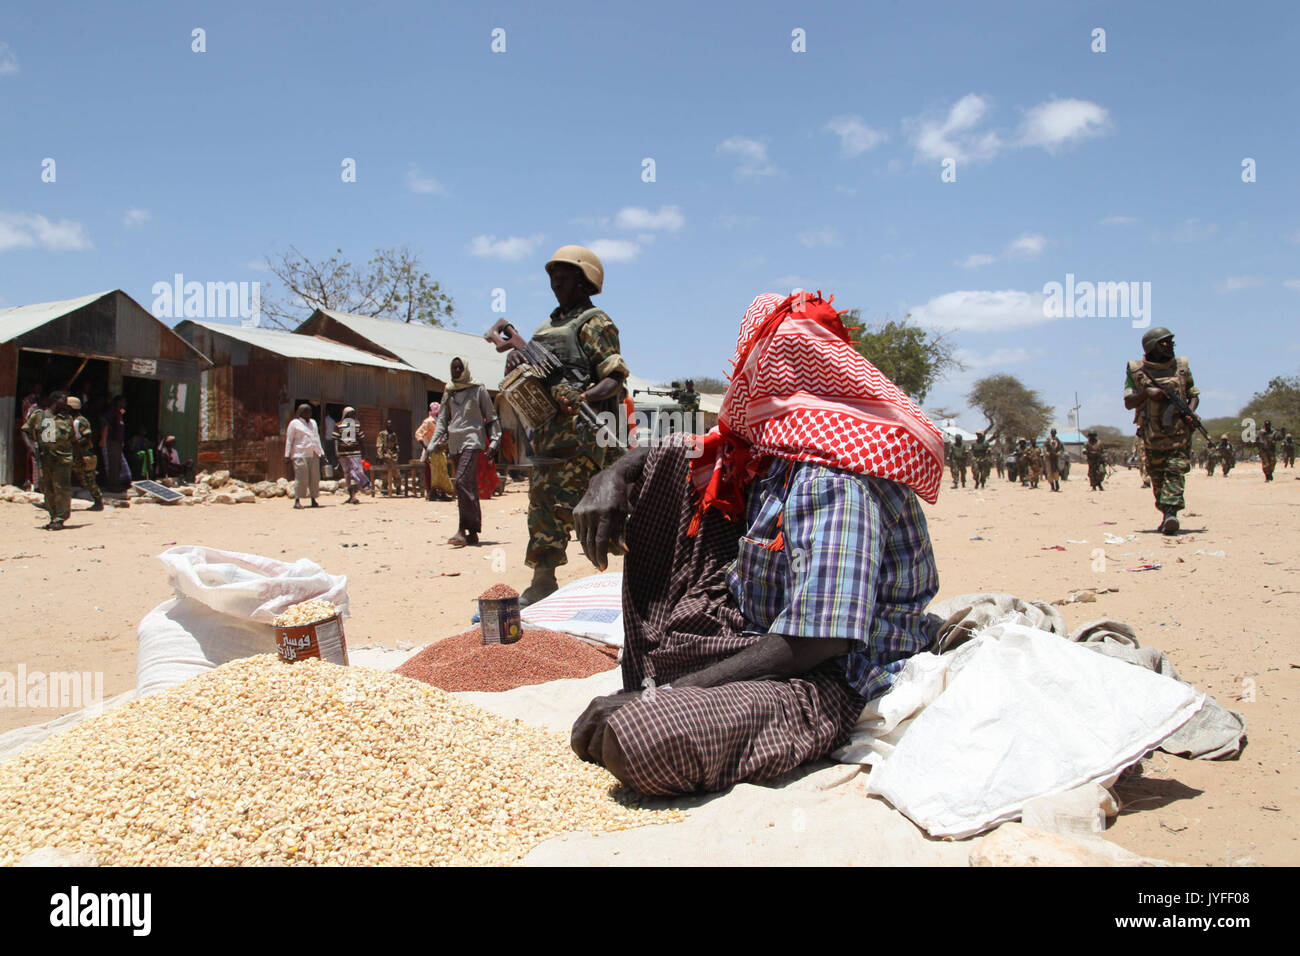 Un homme est assis dans le marché d'Ragaele vendent des produits alimentaires, peu après des soldats burundais appartenant à la Mission de l'Union africaine en Somalie a eu sur la ville d'Al Shabab militants dans l'Hiraan (15230351900) Banque D'Images